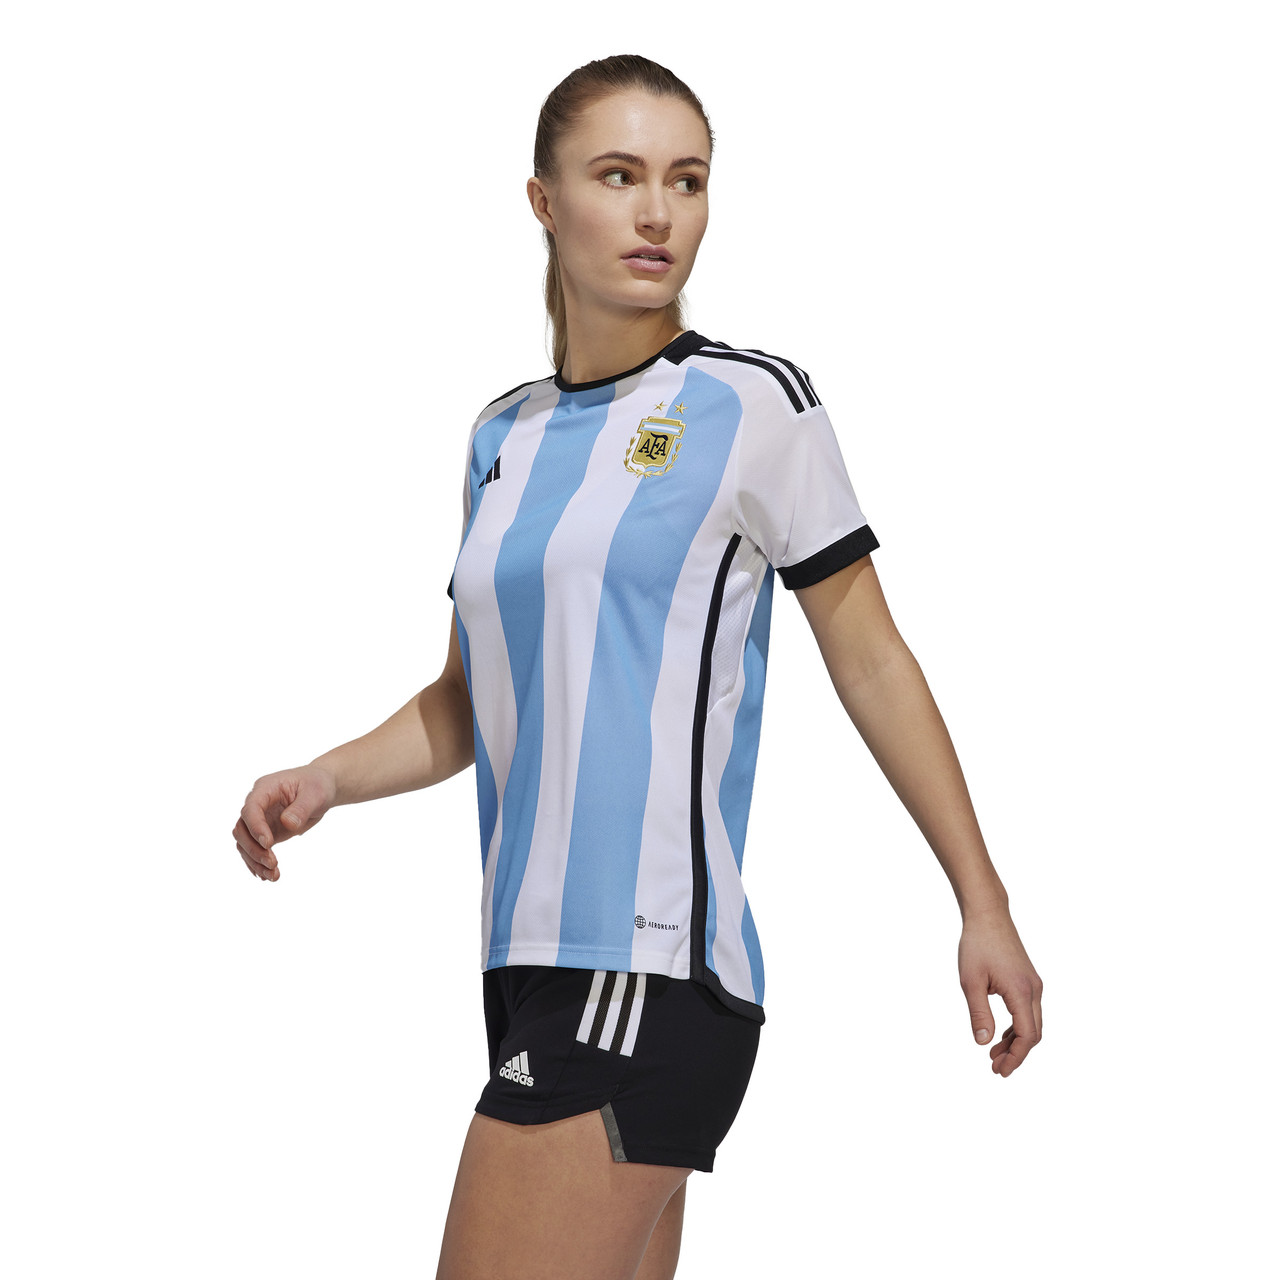 women's argentina football jersey